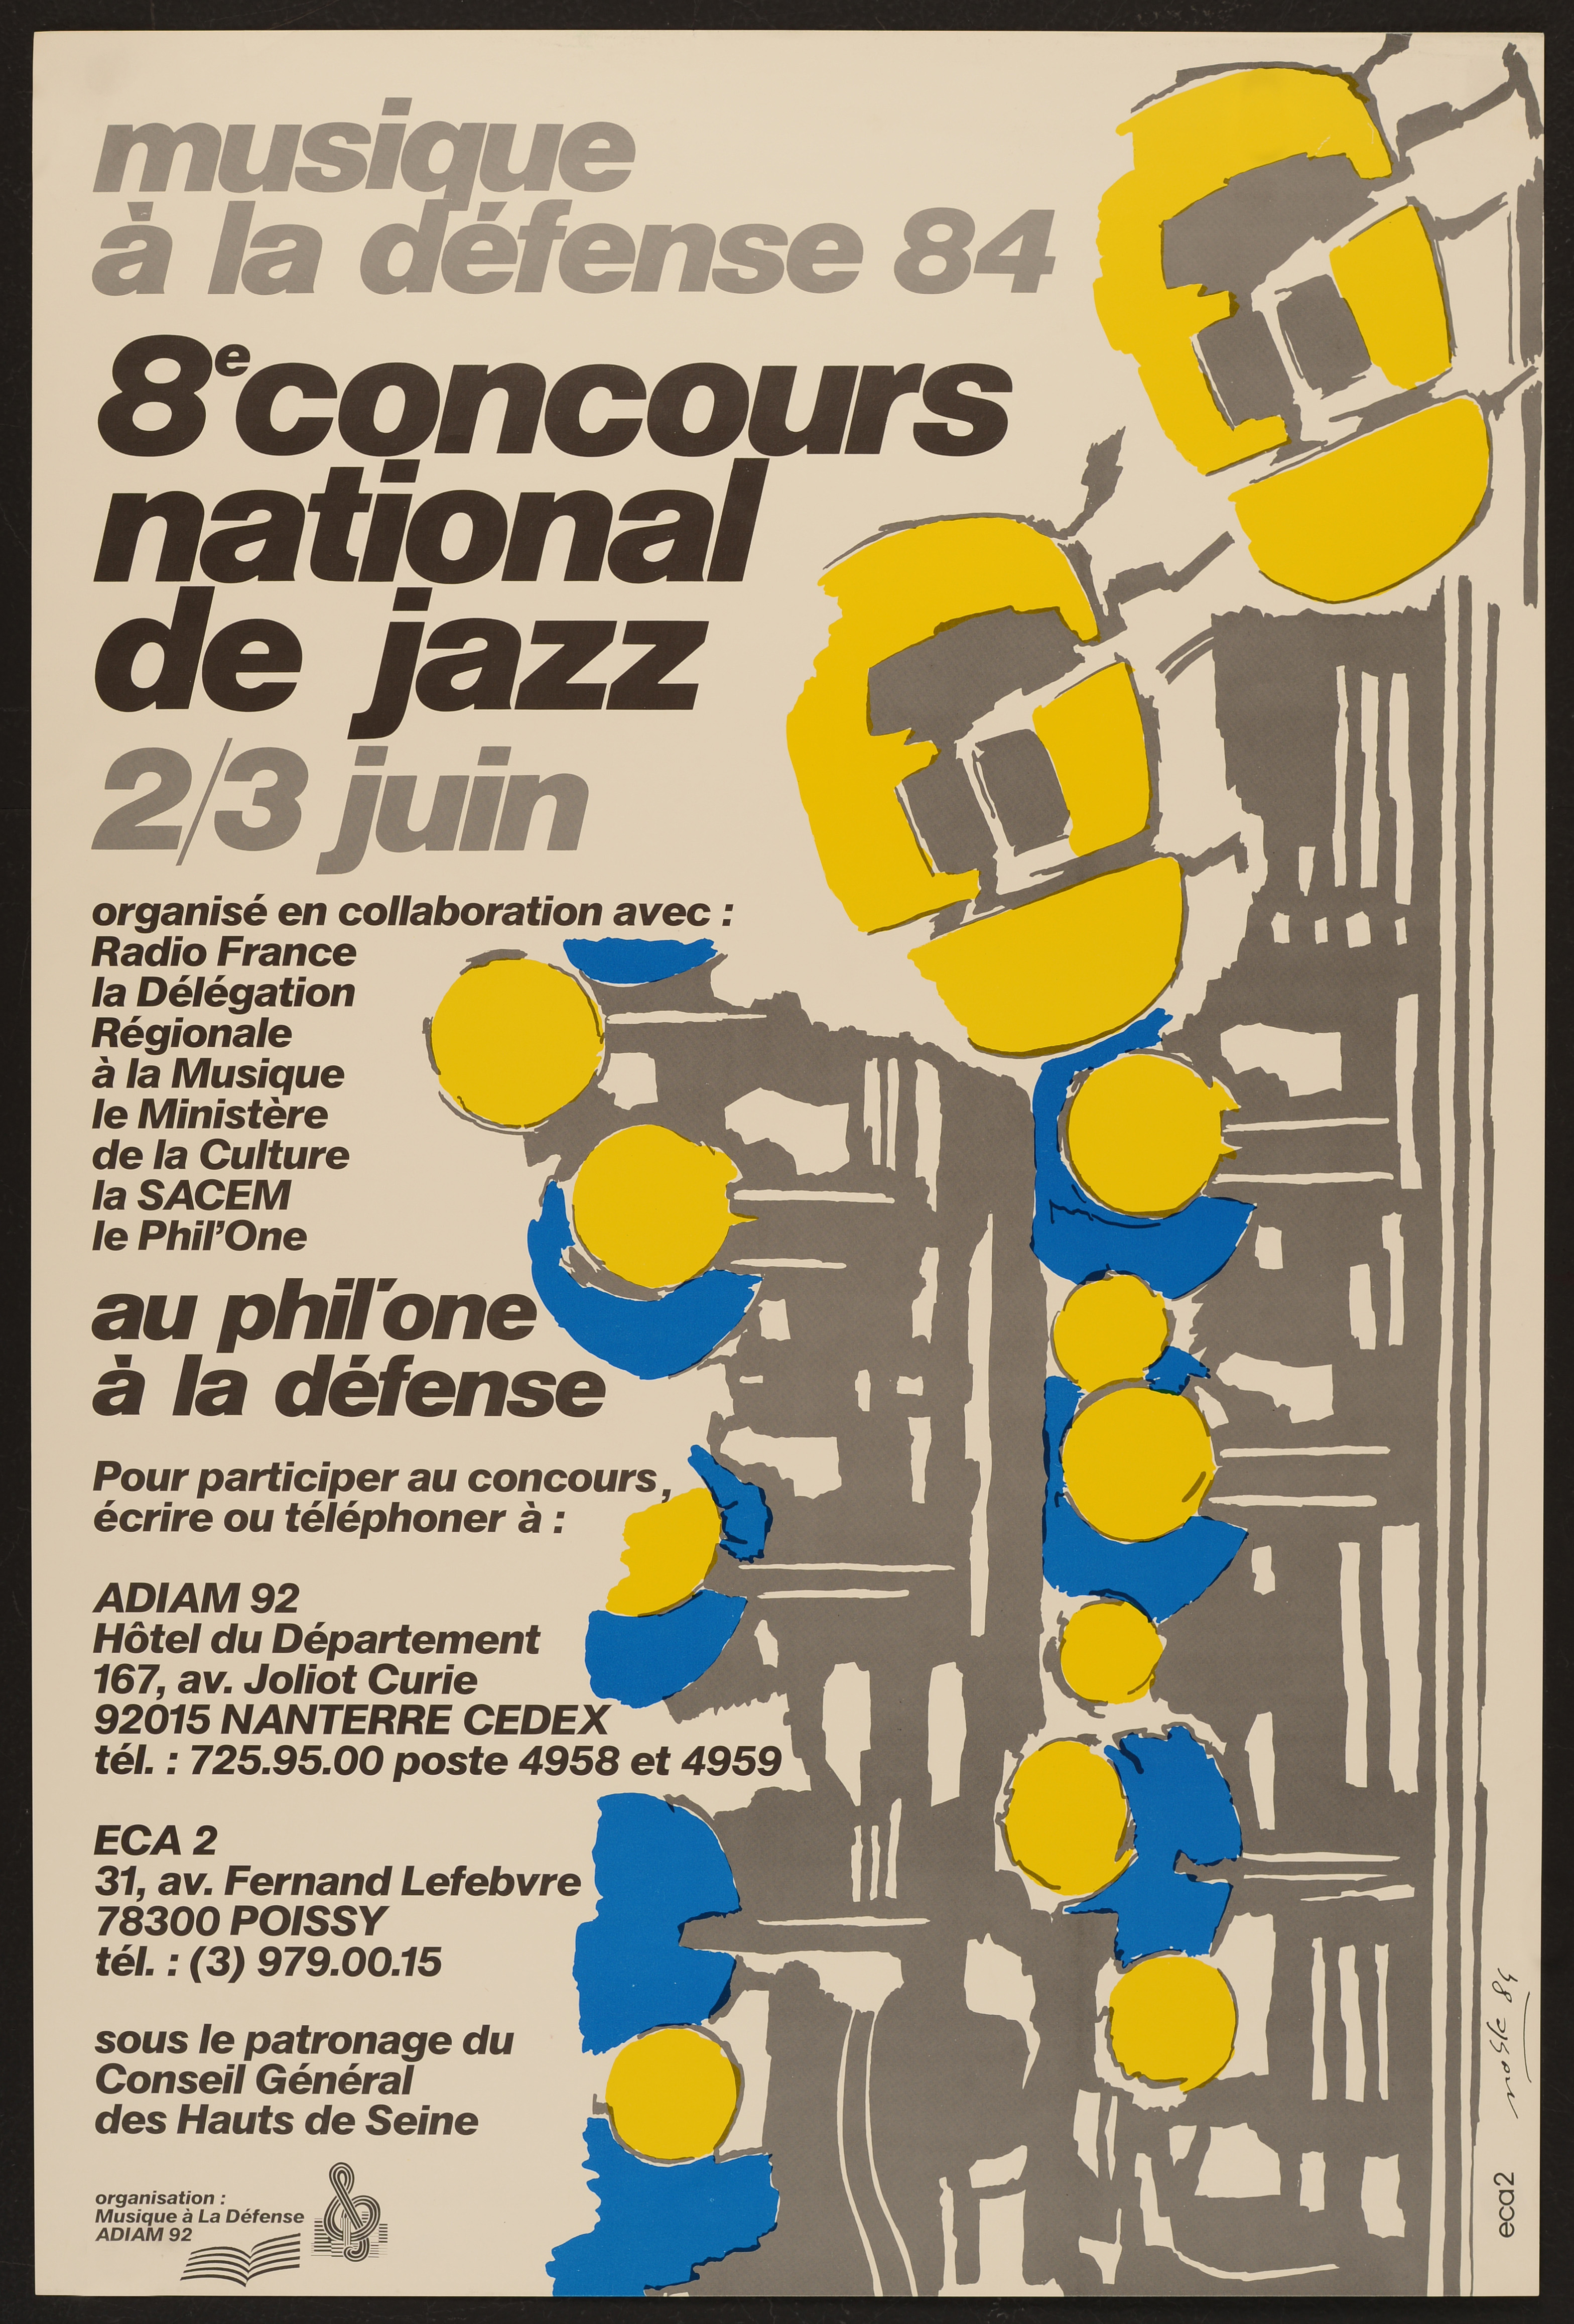 8ème concours national de jazz. 2-3 juin 1984. - Affiche ill. coul. ; 60 x 40 cm.